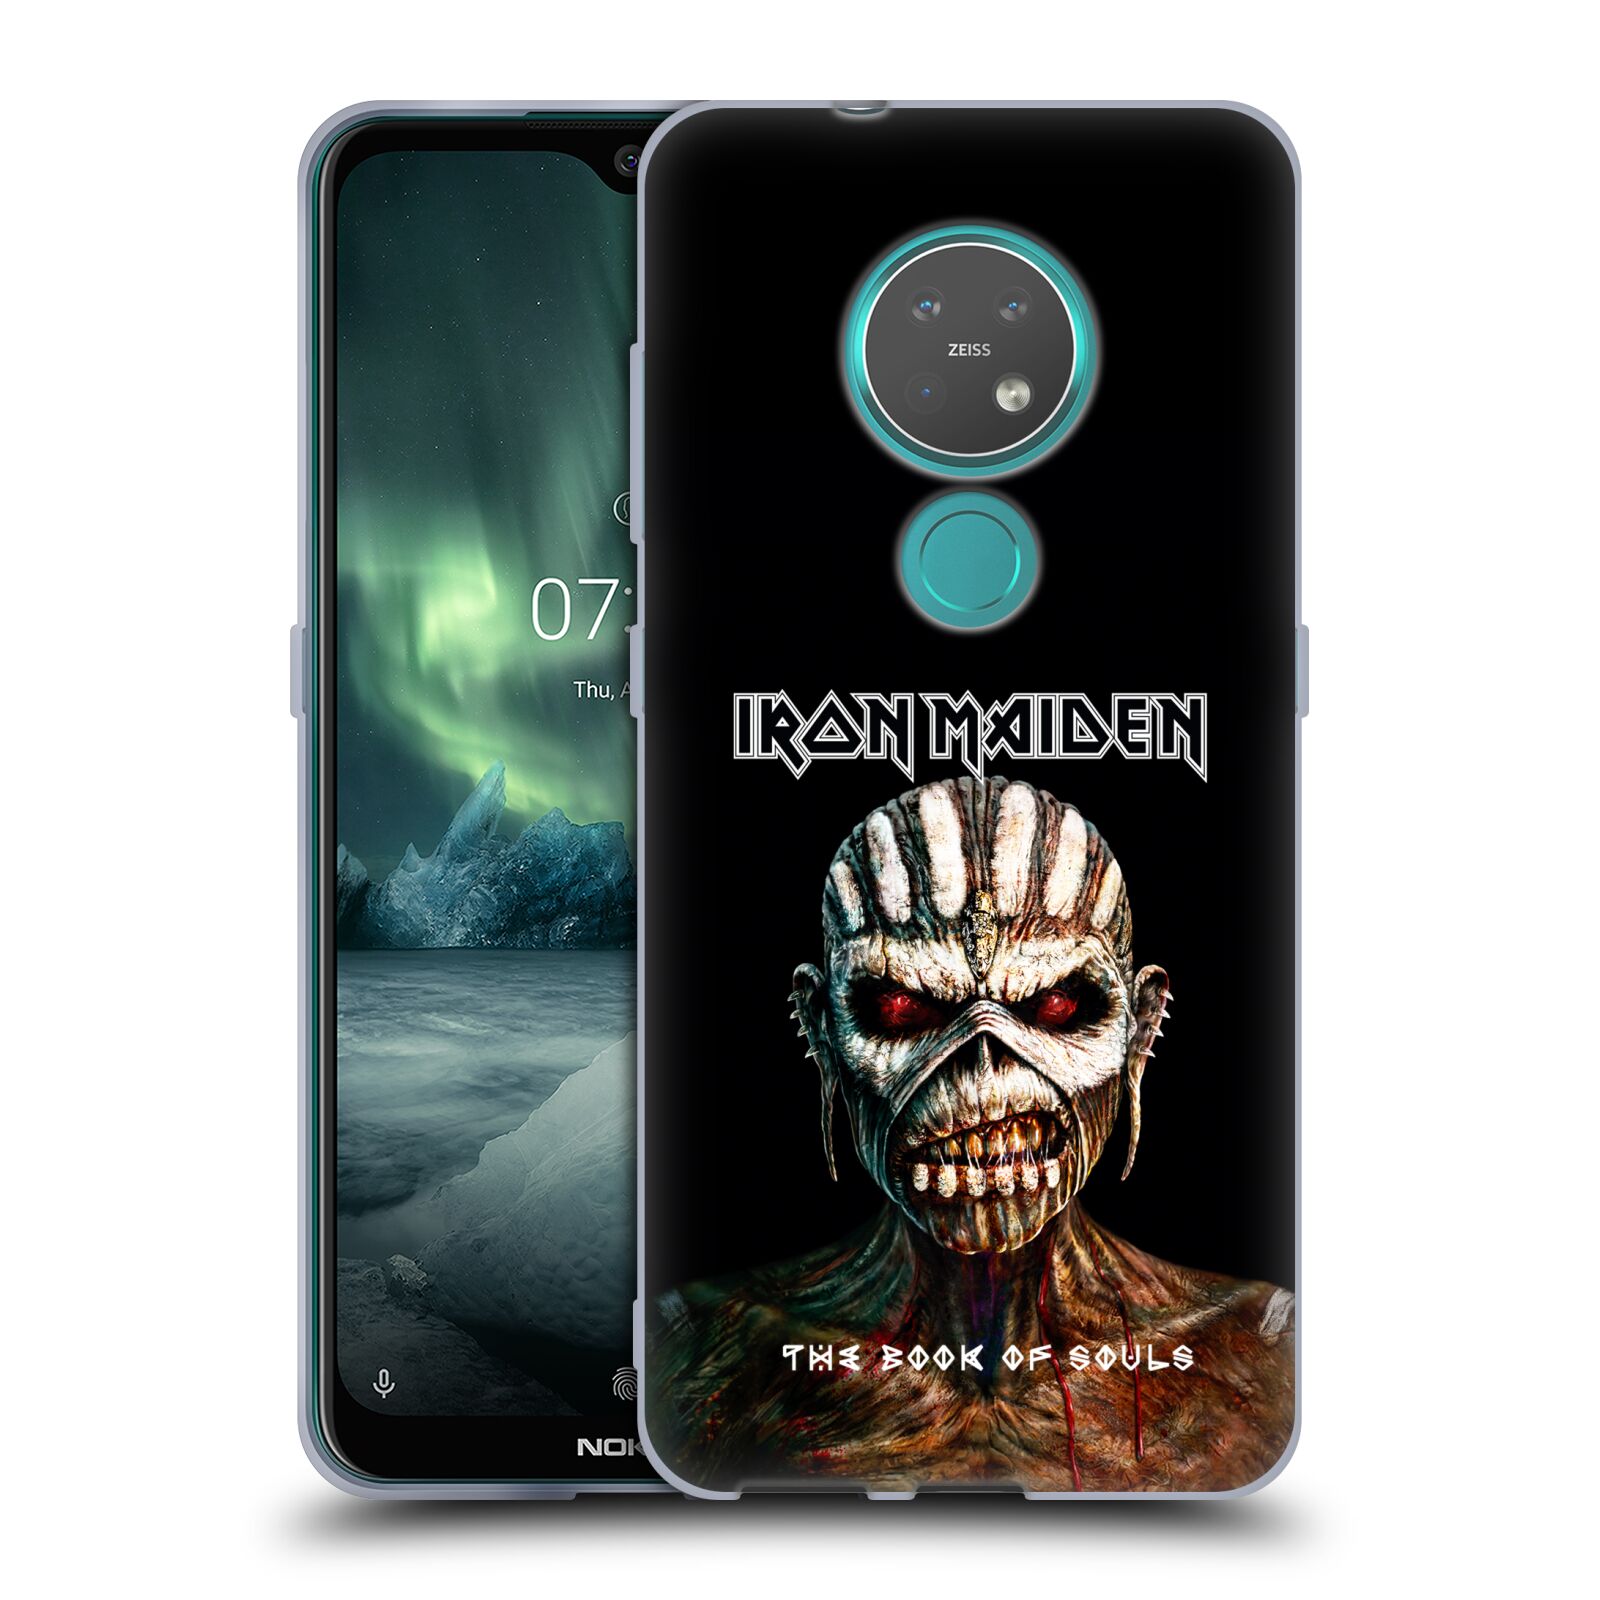 Silikonové pouzdro na mobil Nokia 6.2 - Head Case - Iron Maiden - The Book Of Souls